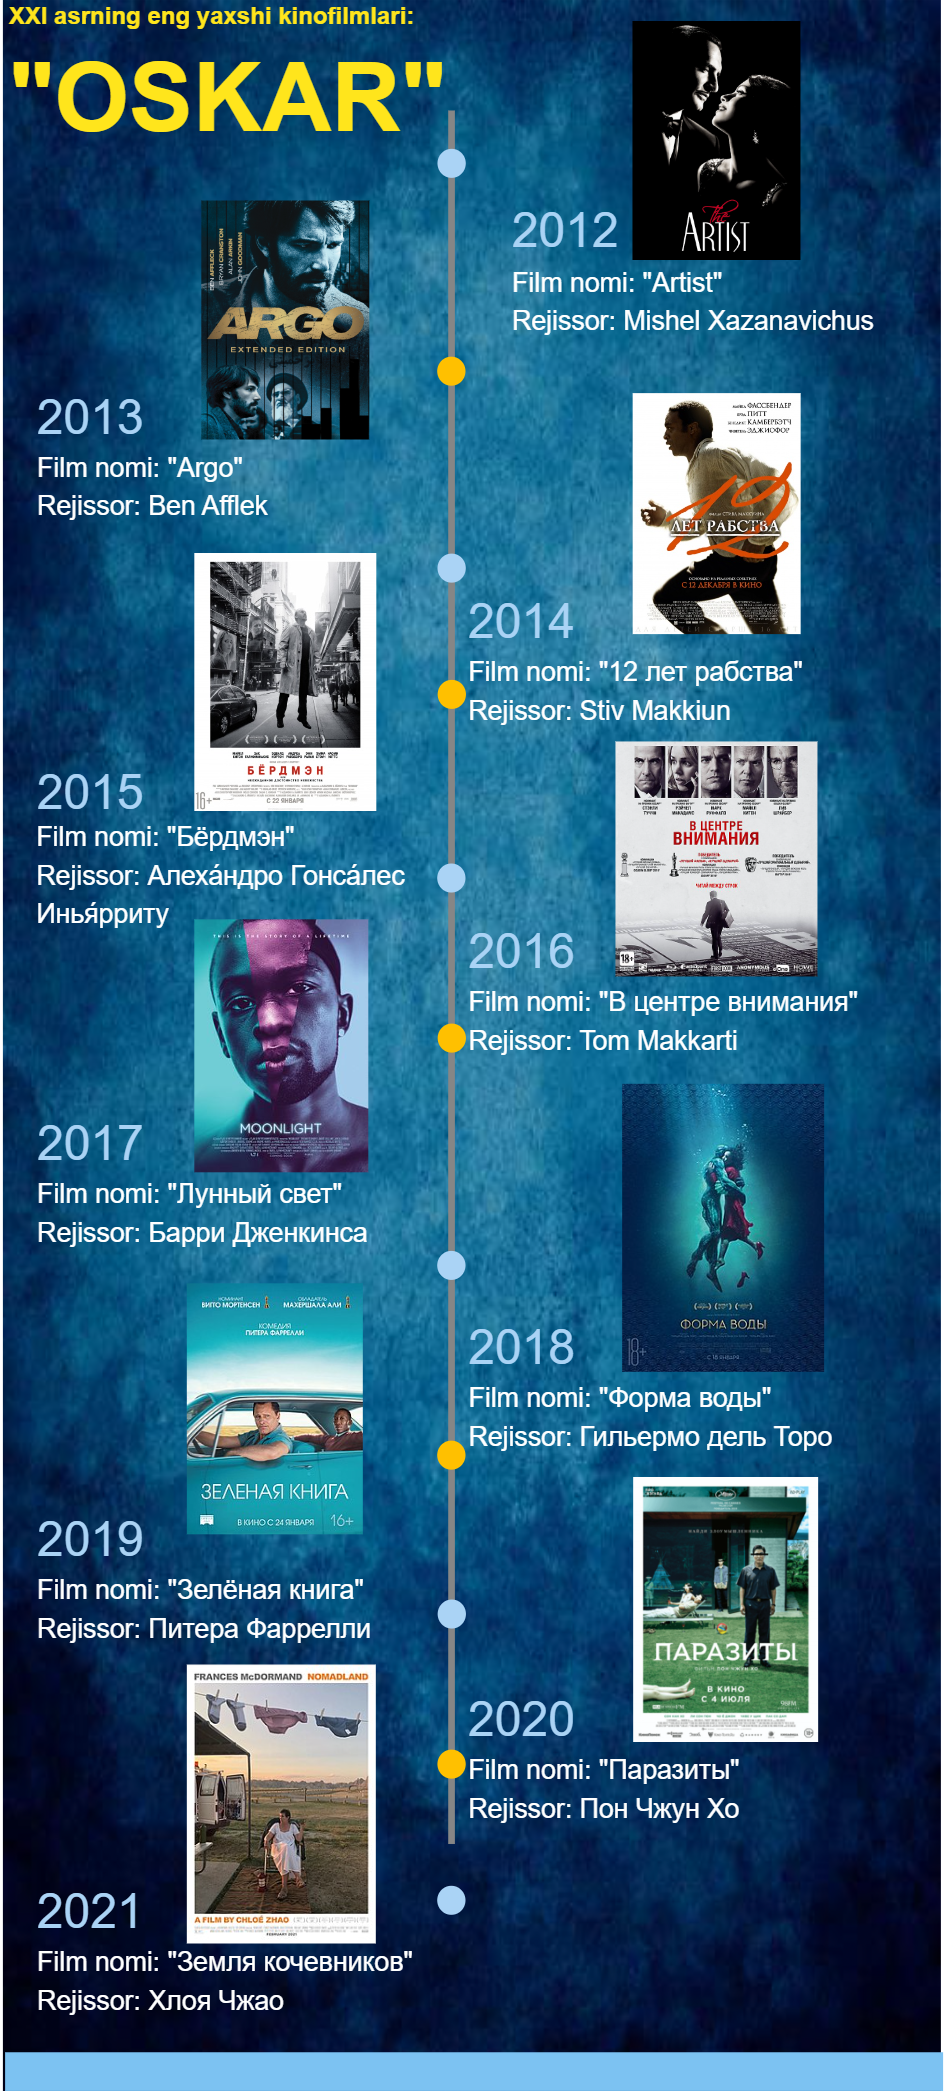 Oskar Movie Infographic